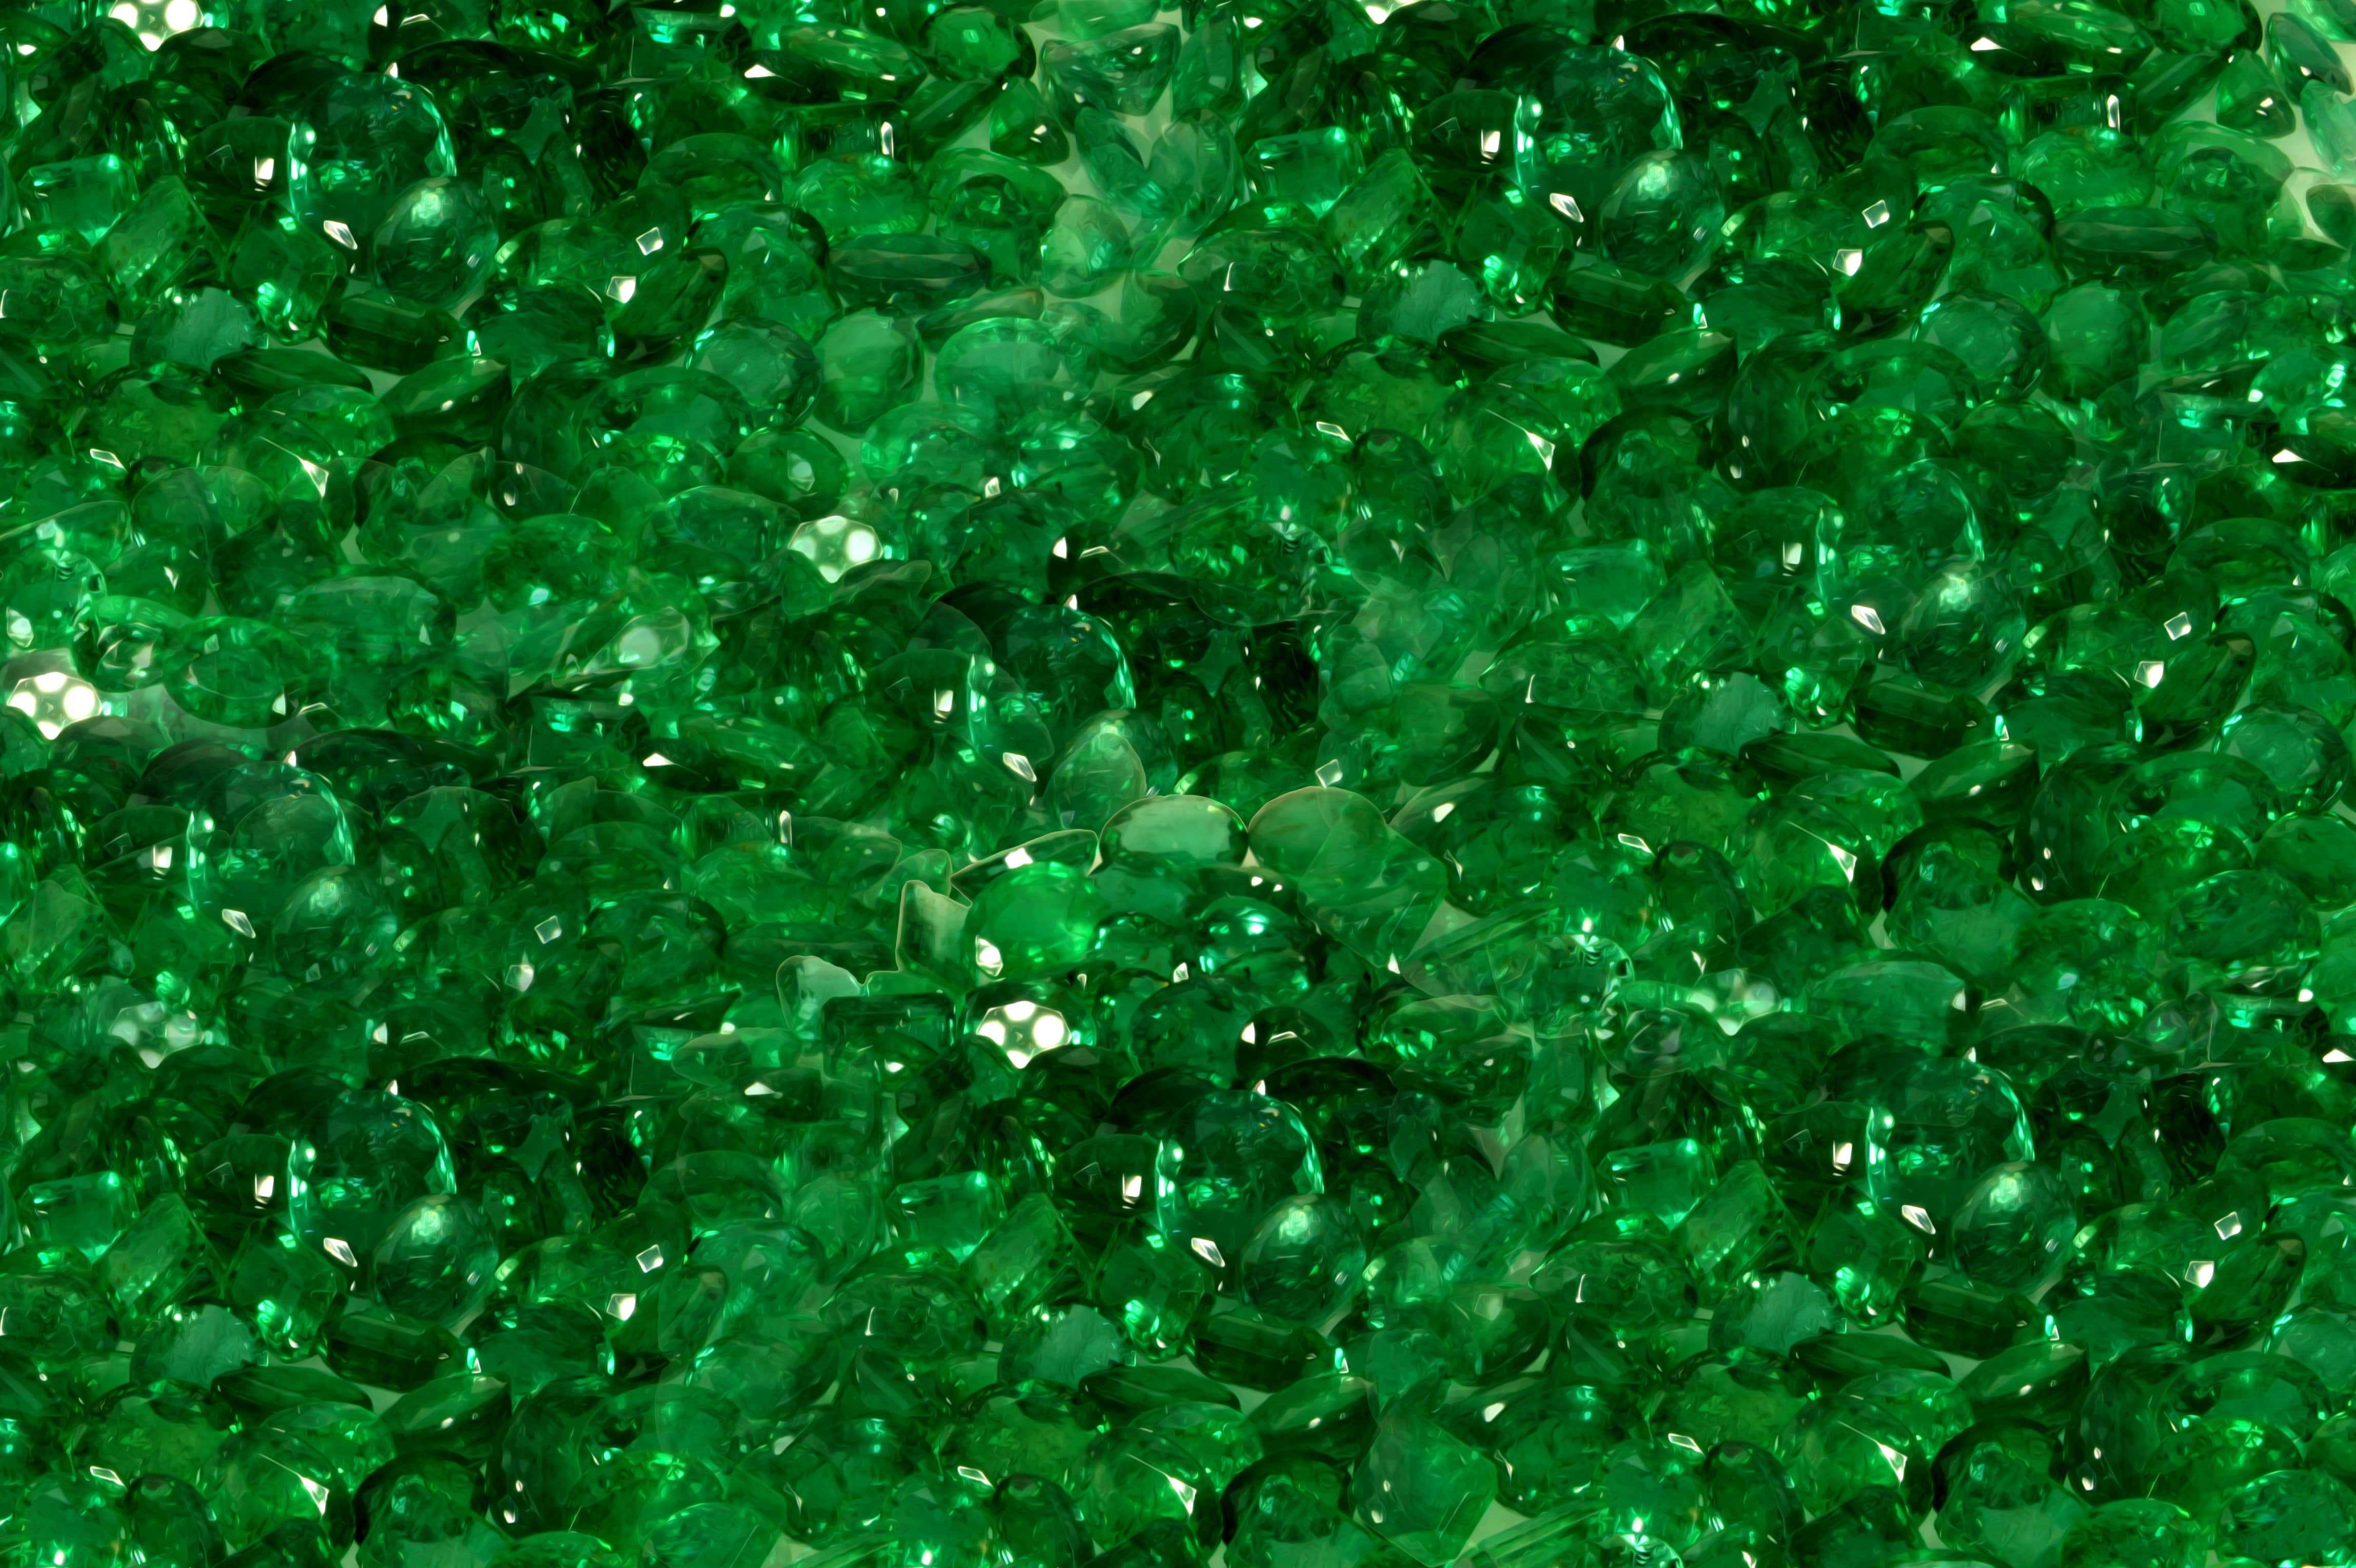 4. "Nail Art Ideas for an Emerald Green Dress" - wide 2